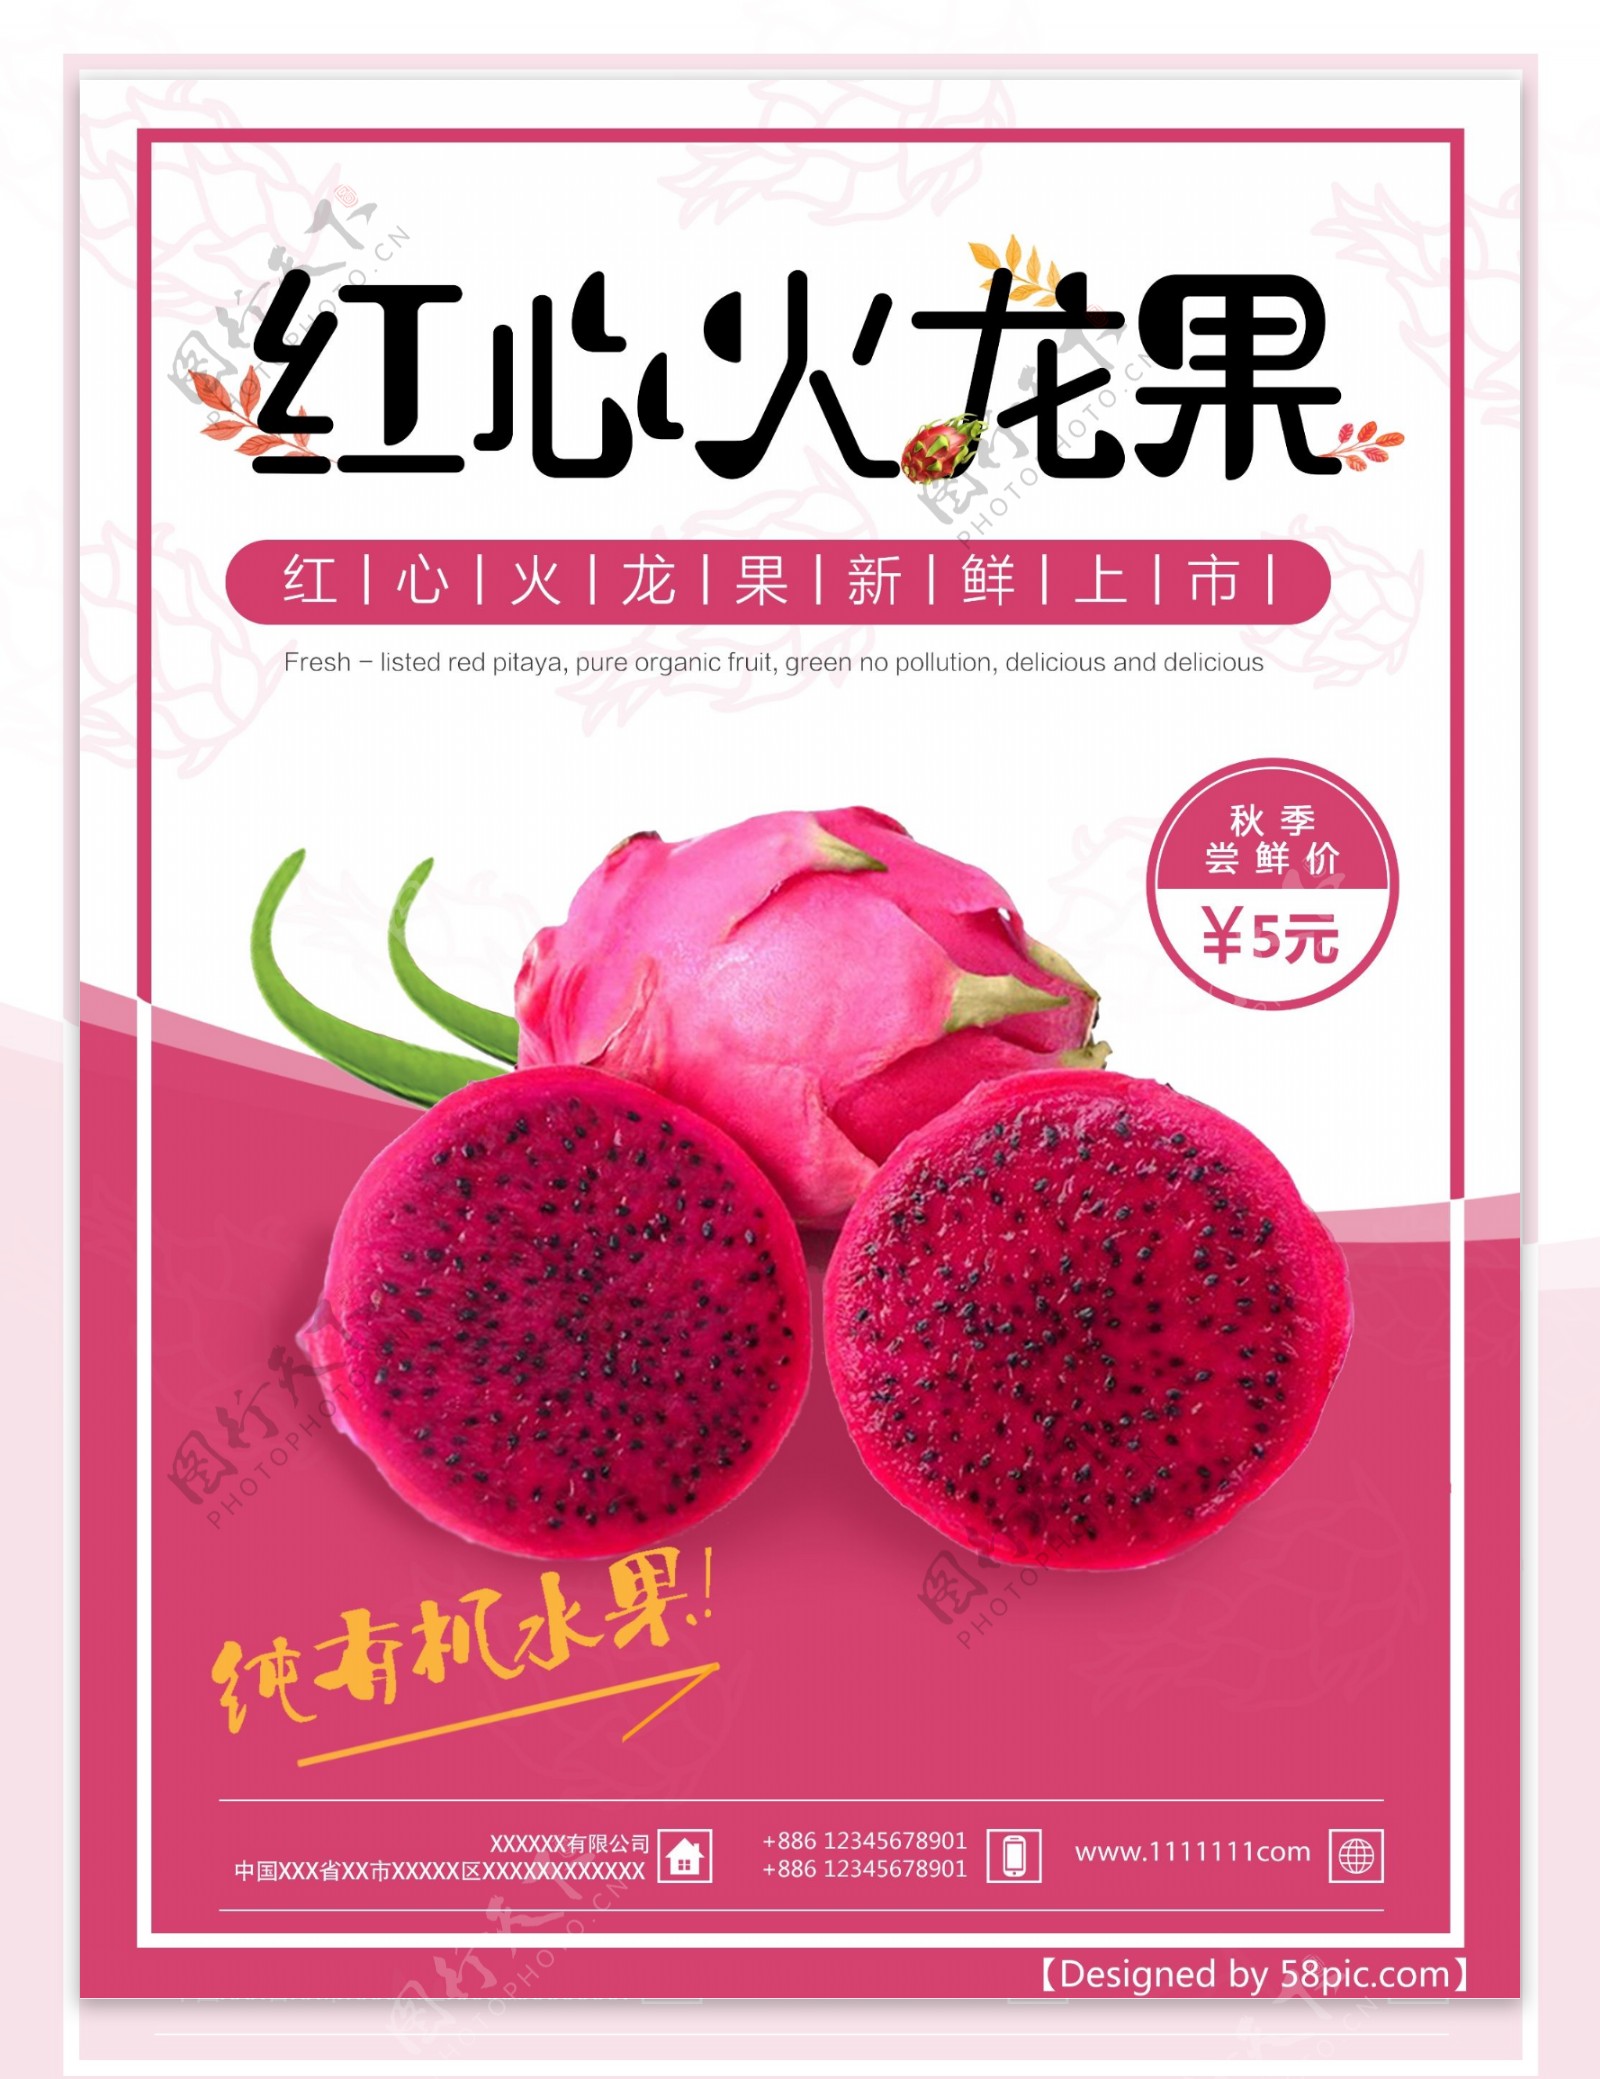 清新红心火龙果水果水果店促销海报